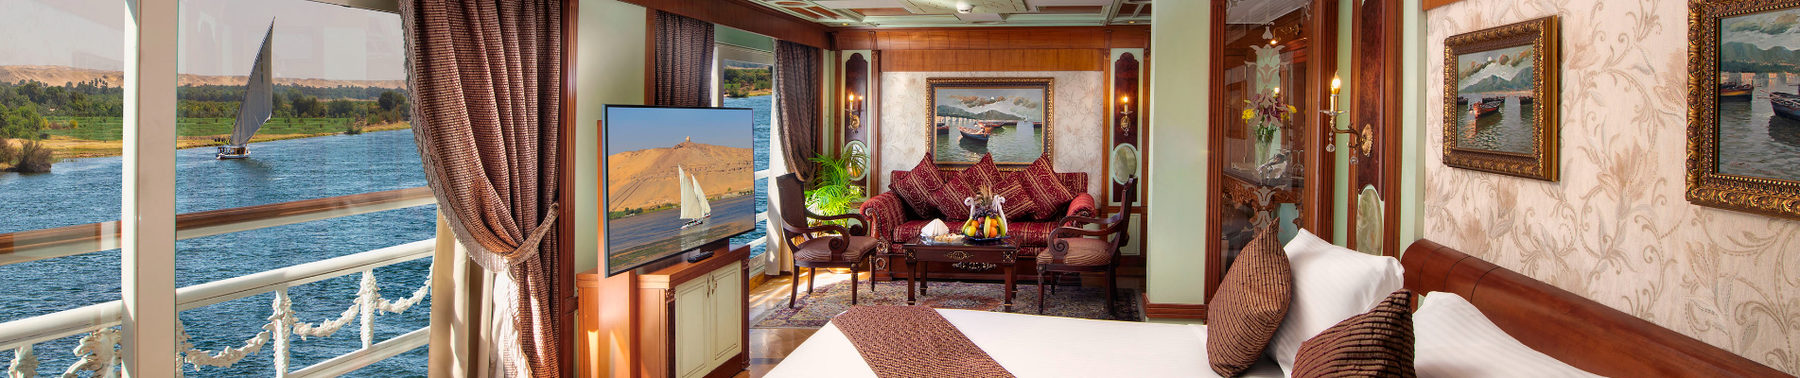 Nile Cruise Accommodation